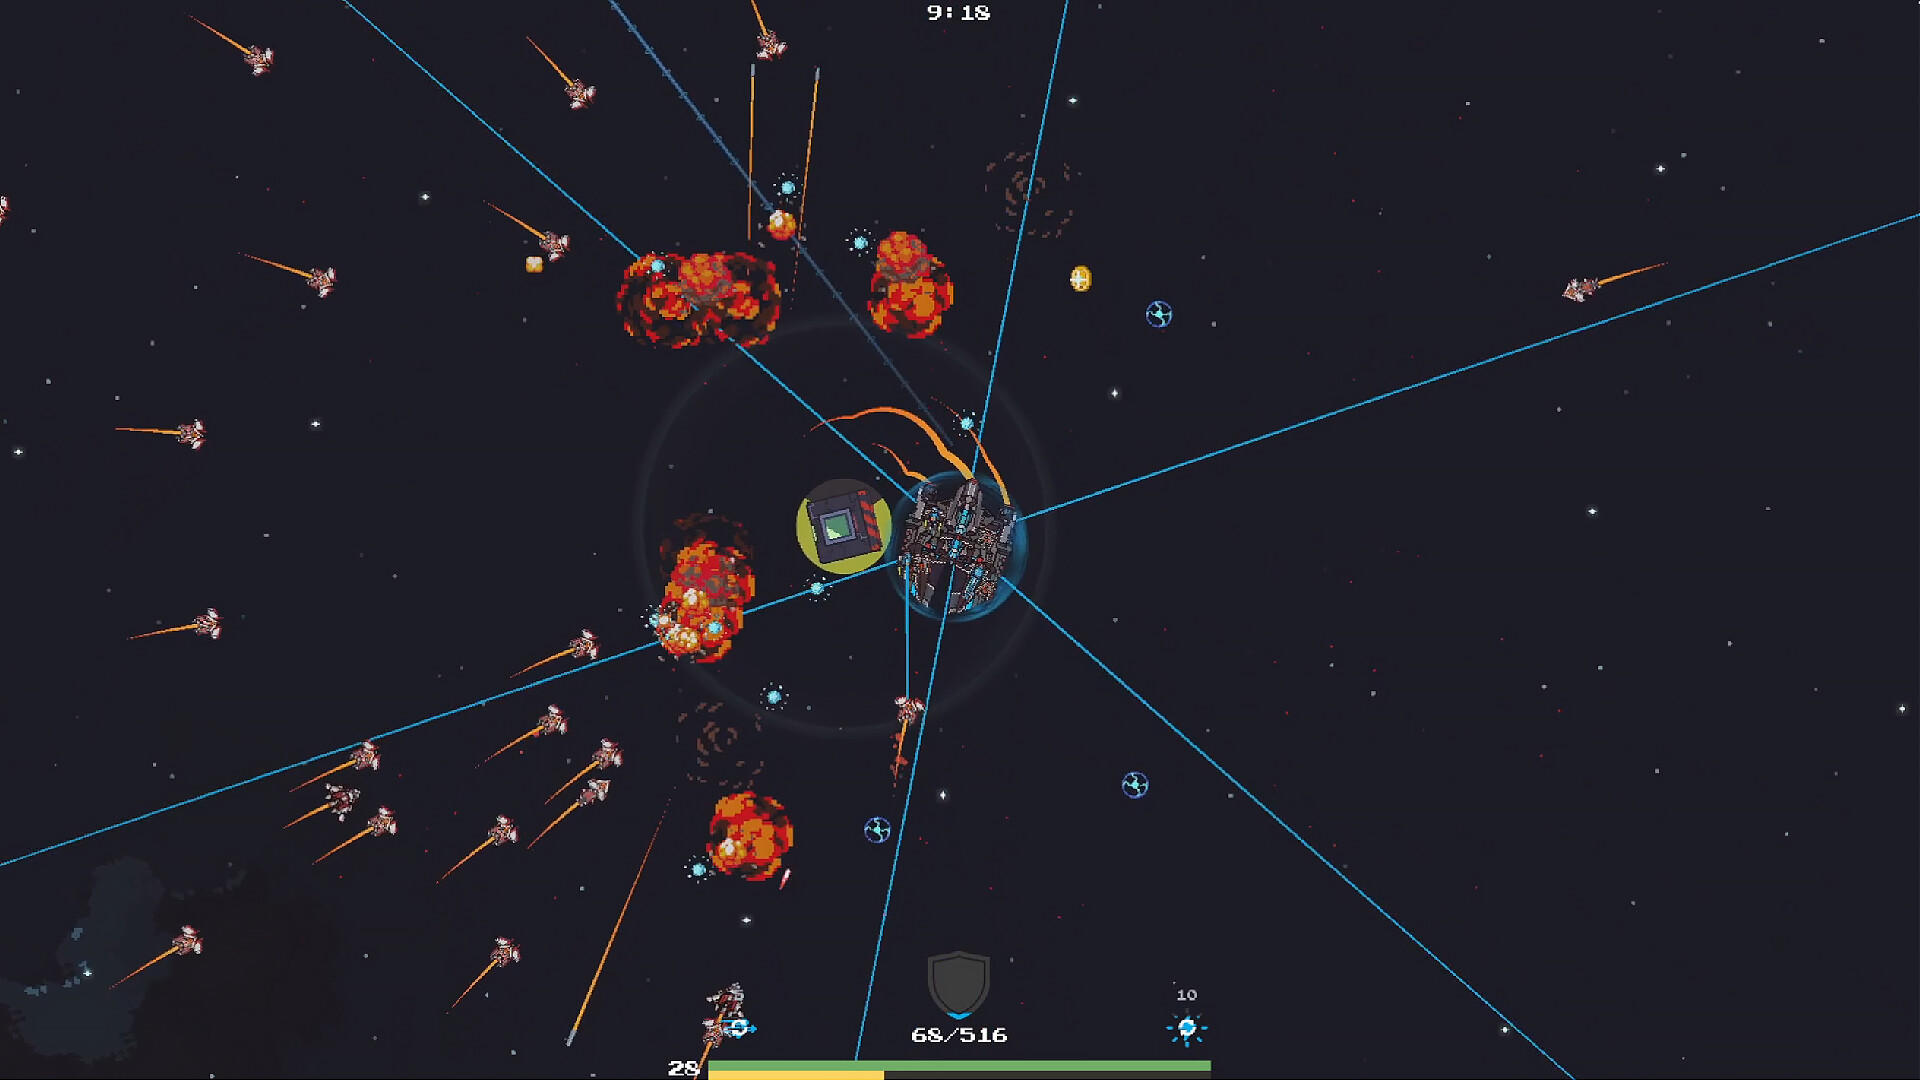 Space Killer screenshot game